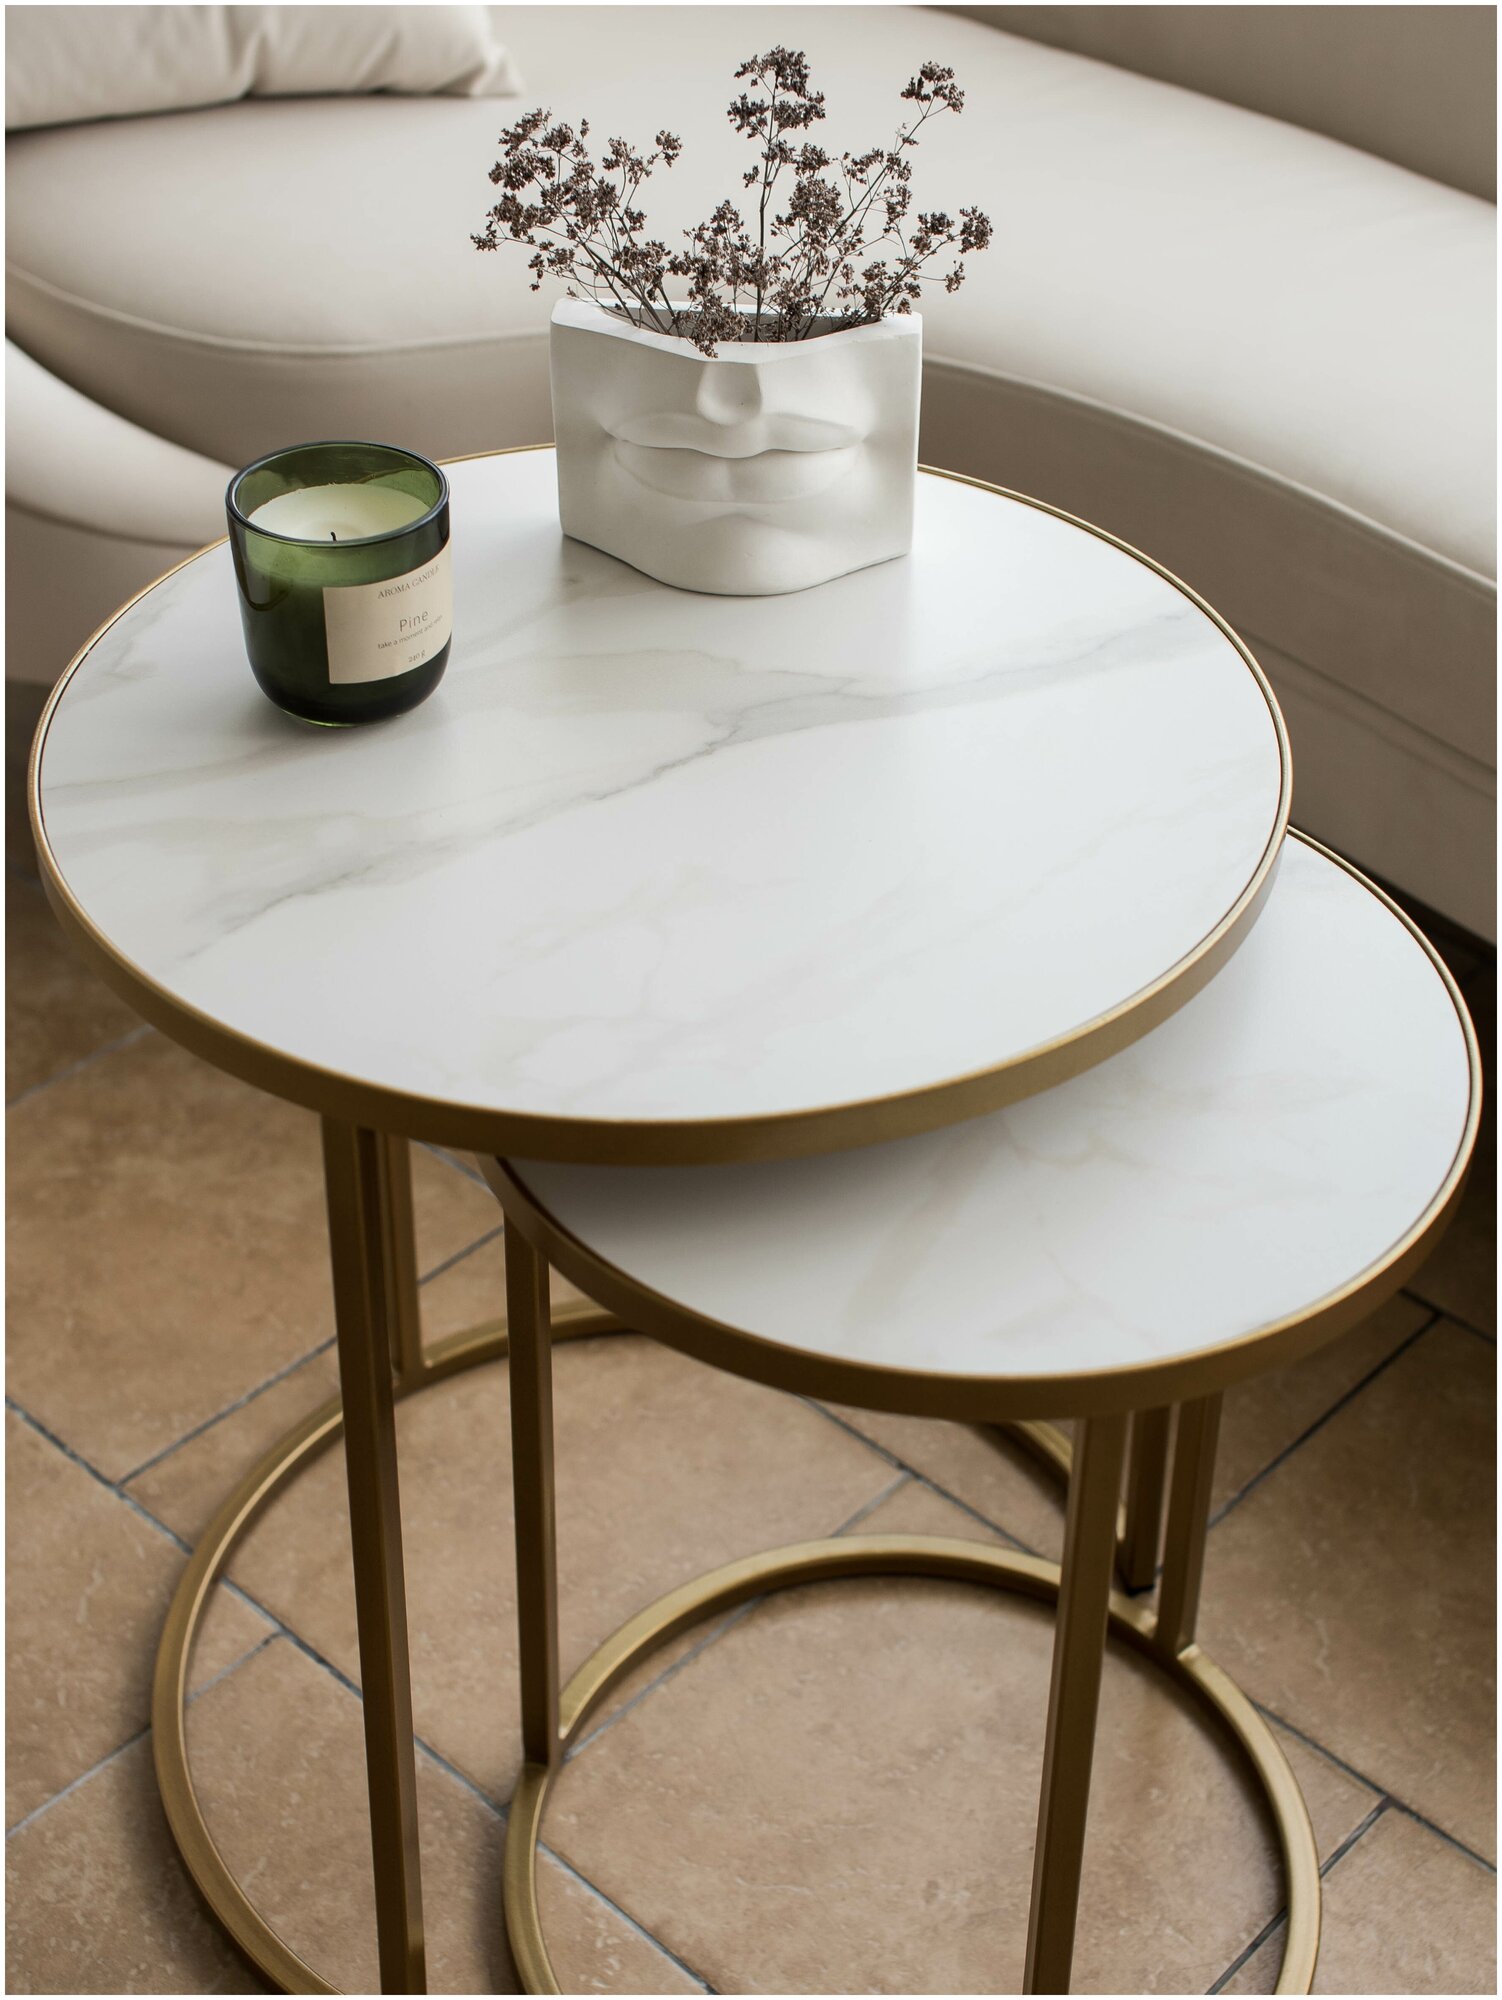 Комплект круглых журнальных столов из керамогранита Marble2bronze диаметры 45 и 35 см.